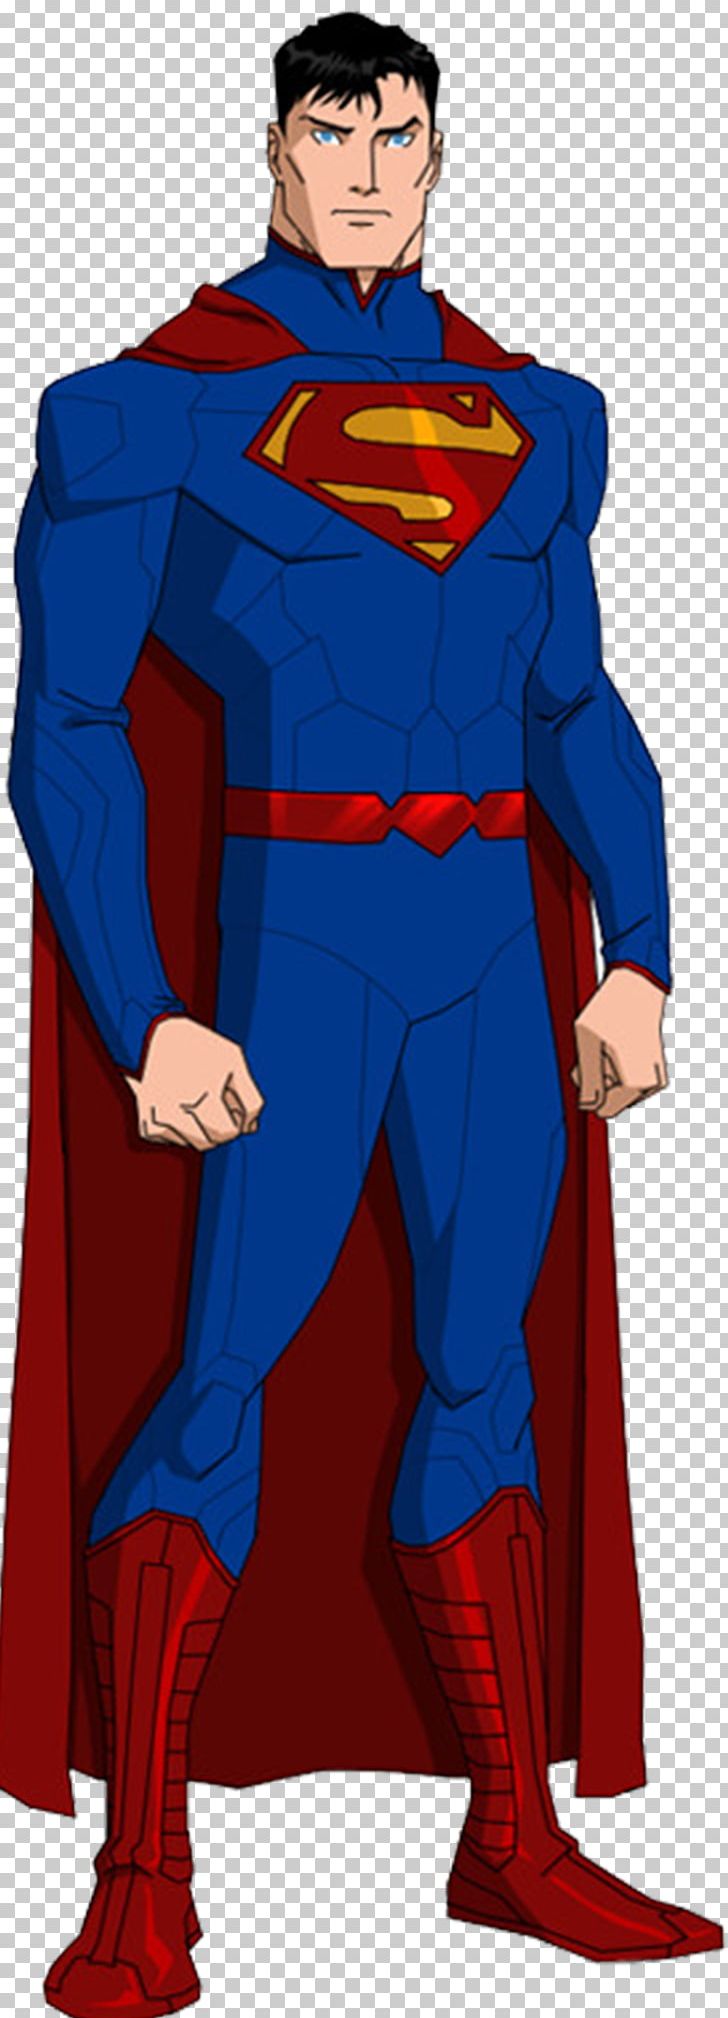 Superman Young Justice Superboy Kara Zor-El Batman PNG, Clipart, Animation, Batman, Be Perfect, Comics, Electric Blue Free PNG Download